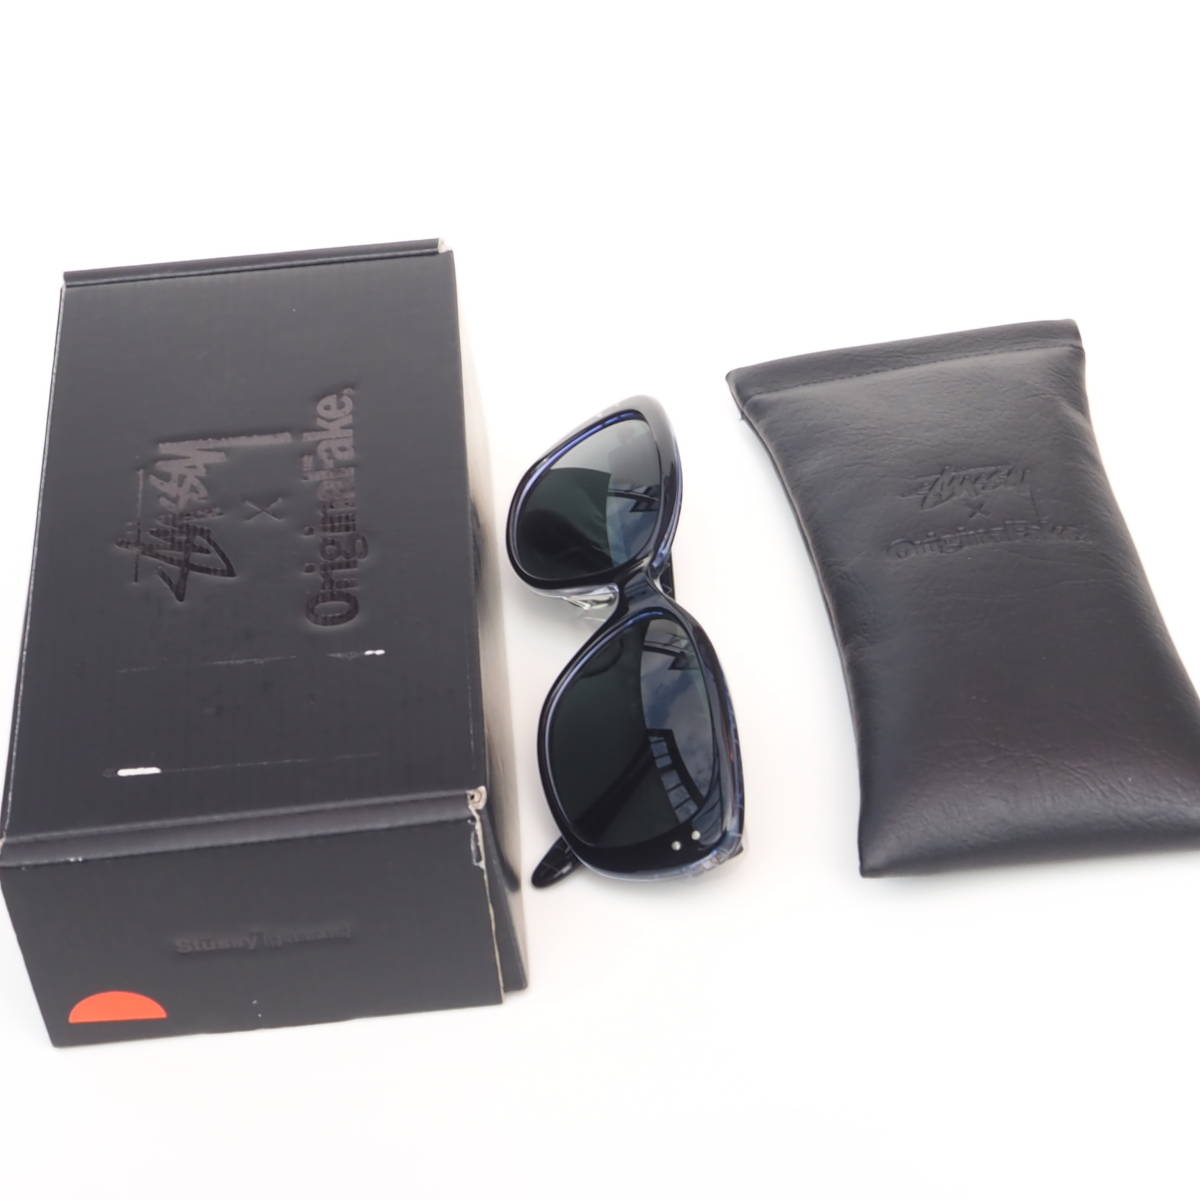  DEAD   редкий !!  новый товар  STUSSY NAOMI OriginalFake KAWS  солнцезащитные очки  ...  оригинал  фальшивый   ...  солнцезащитные очки   синий  